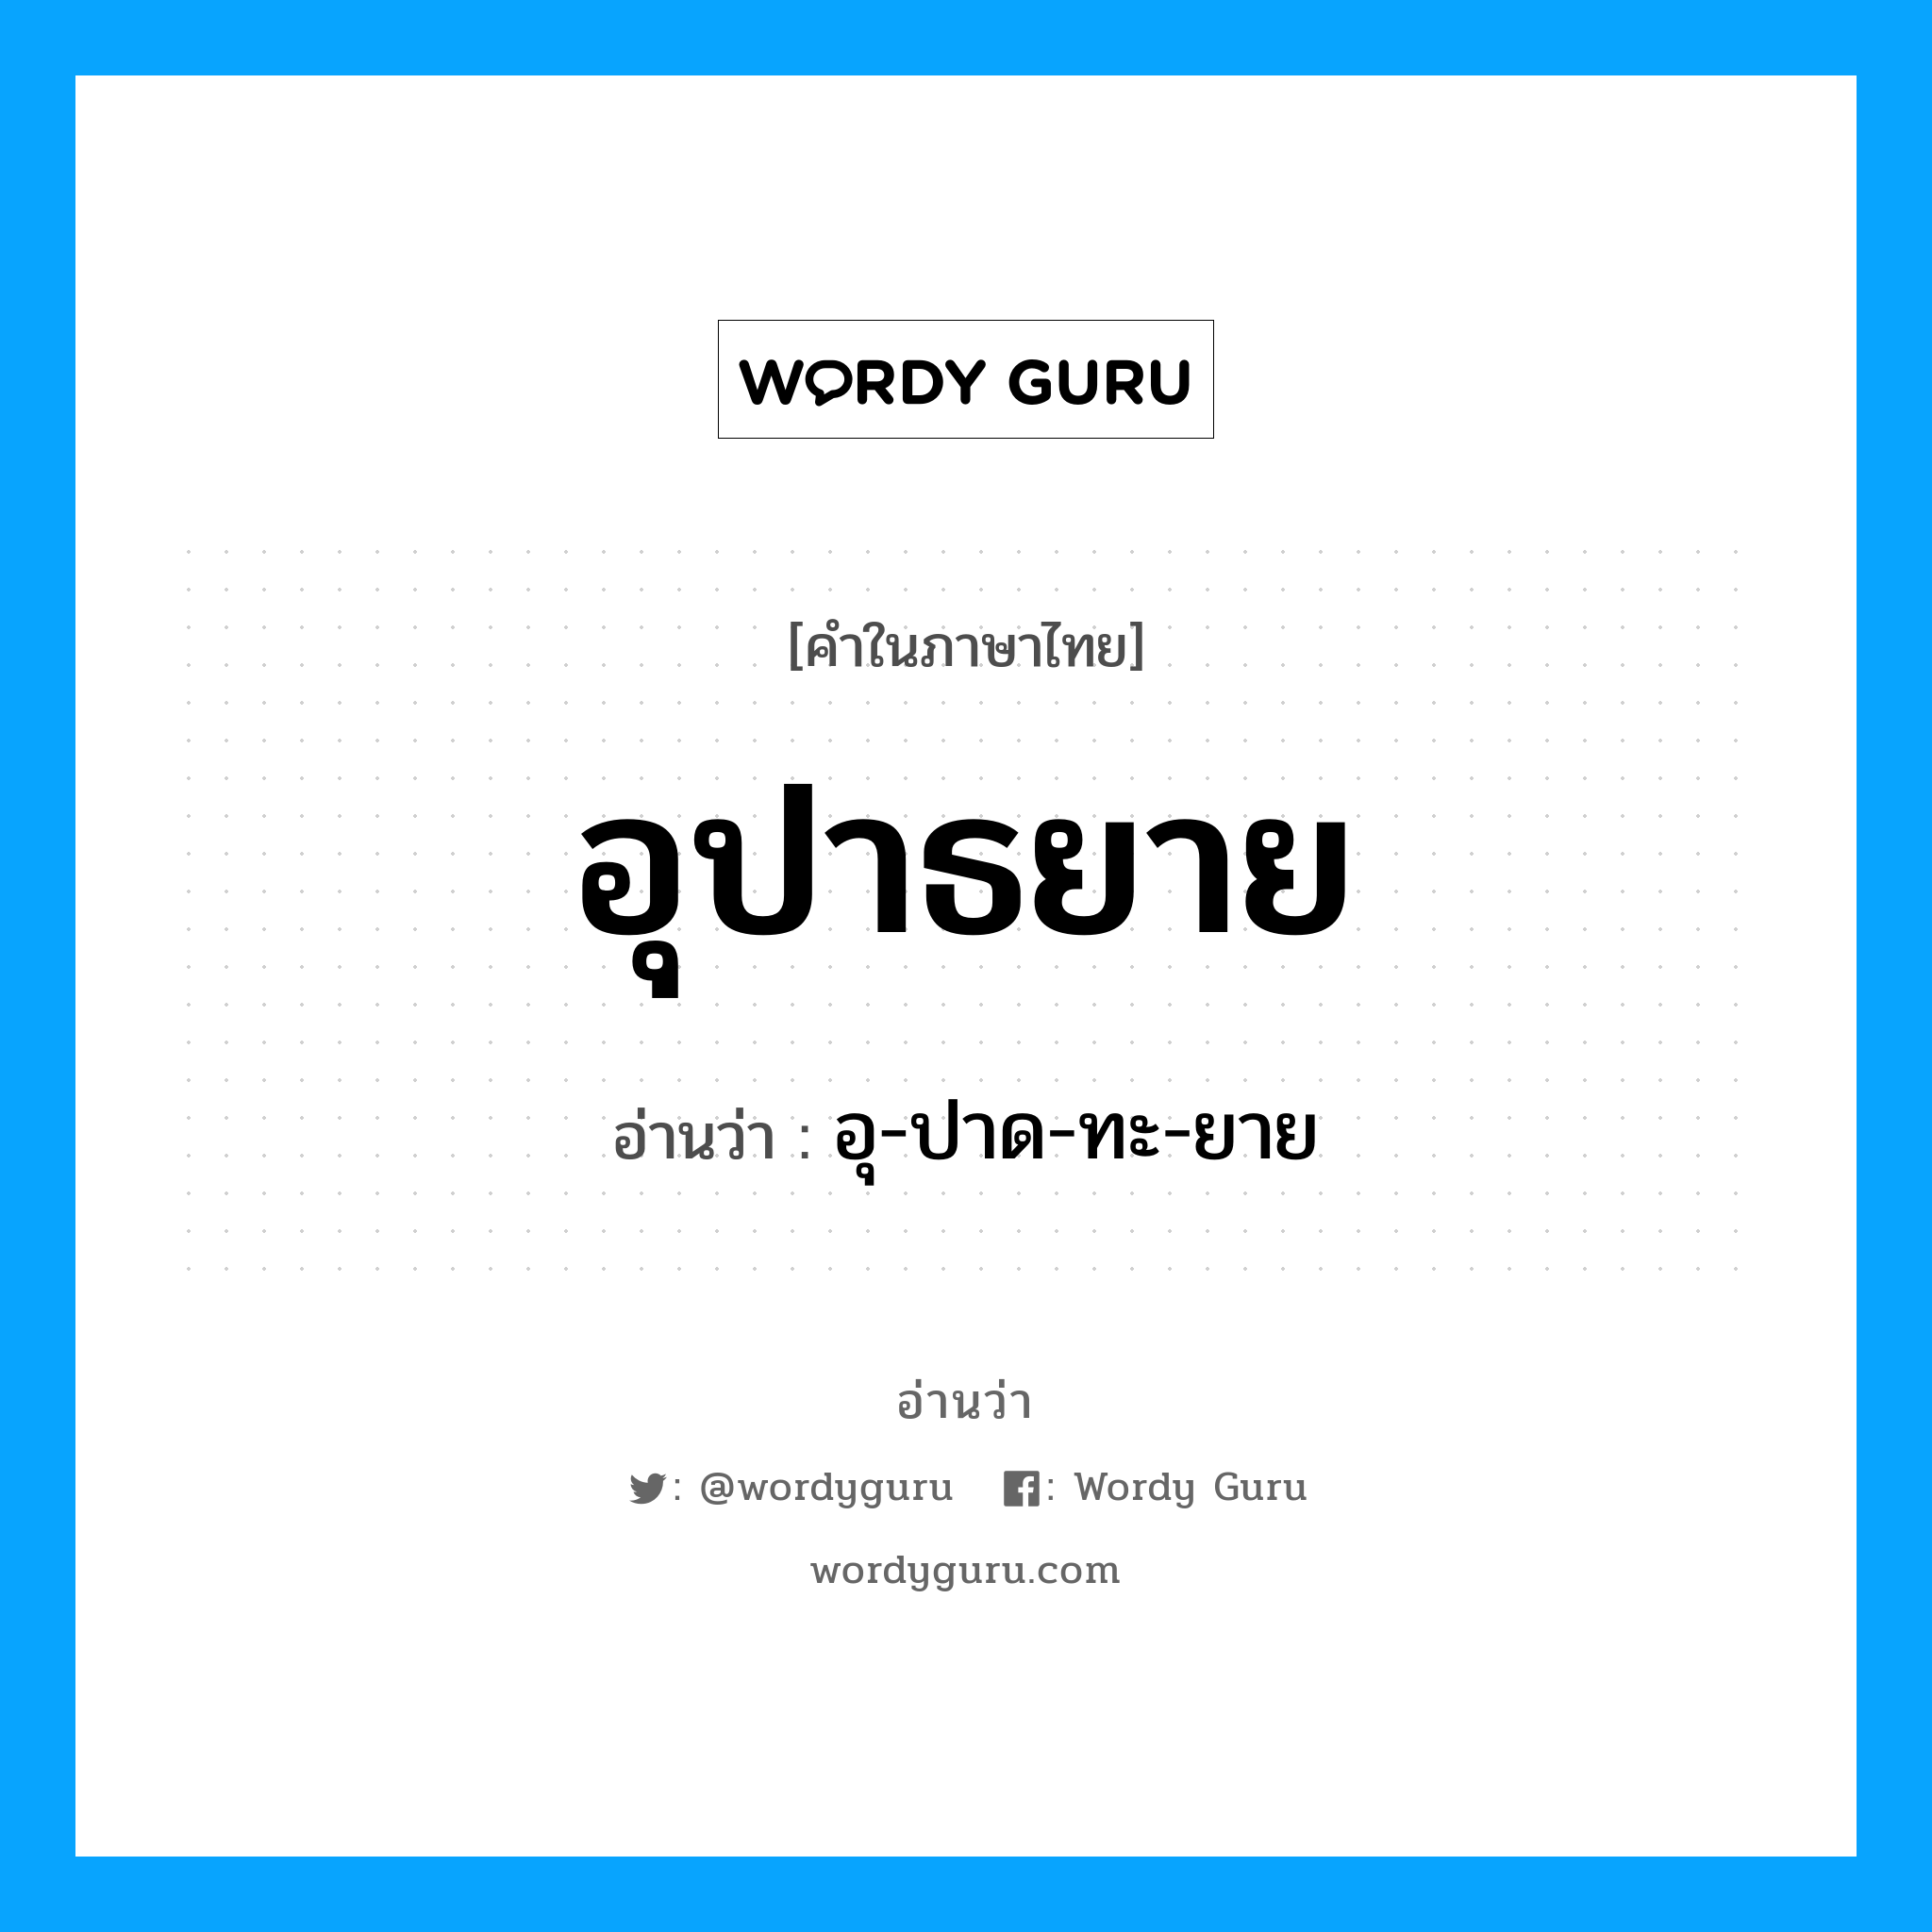 อุ-ปาด-ทะ-ยาย เป็นคำอ่านของคำไหน?, คำในภาษาไทย อุ-ปาด-ทะ-ยาย อ่านว่า อุปาธยาย